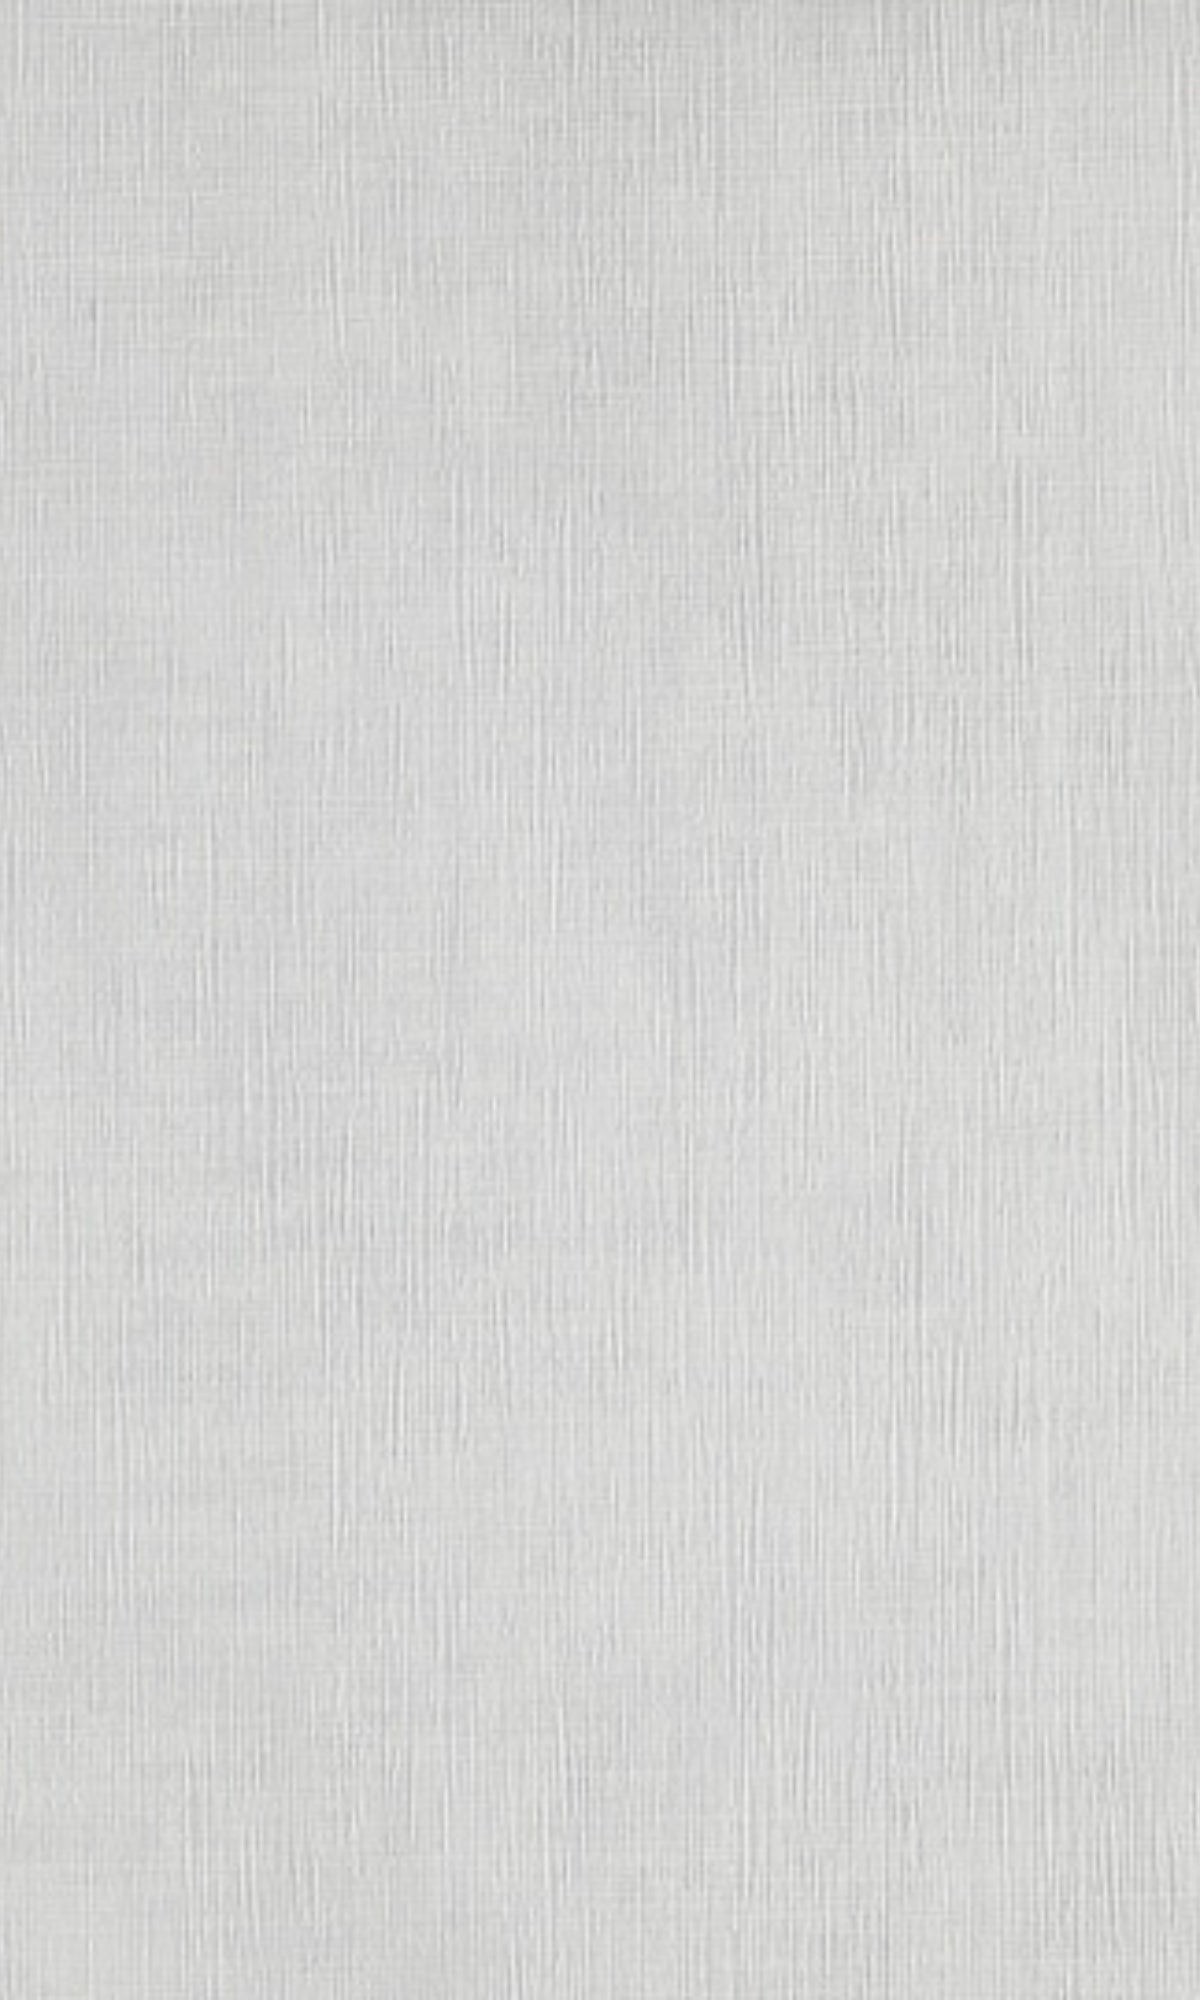 Grey Linen Vinyl Commercial Wallpaper C7549